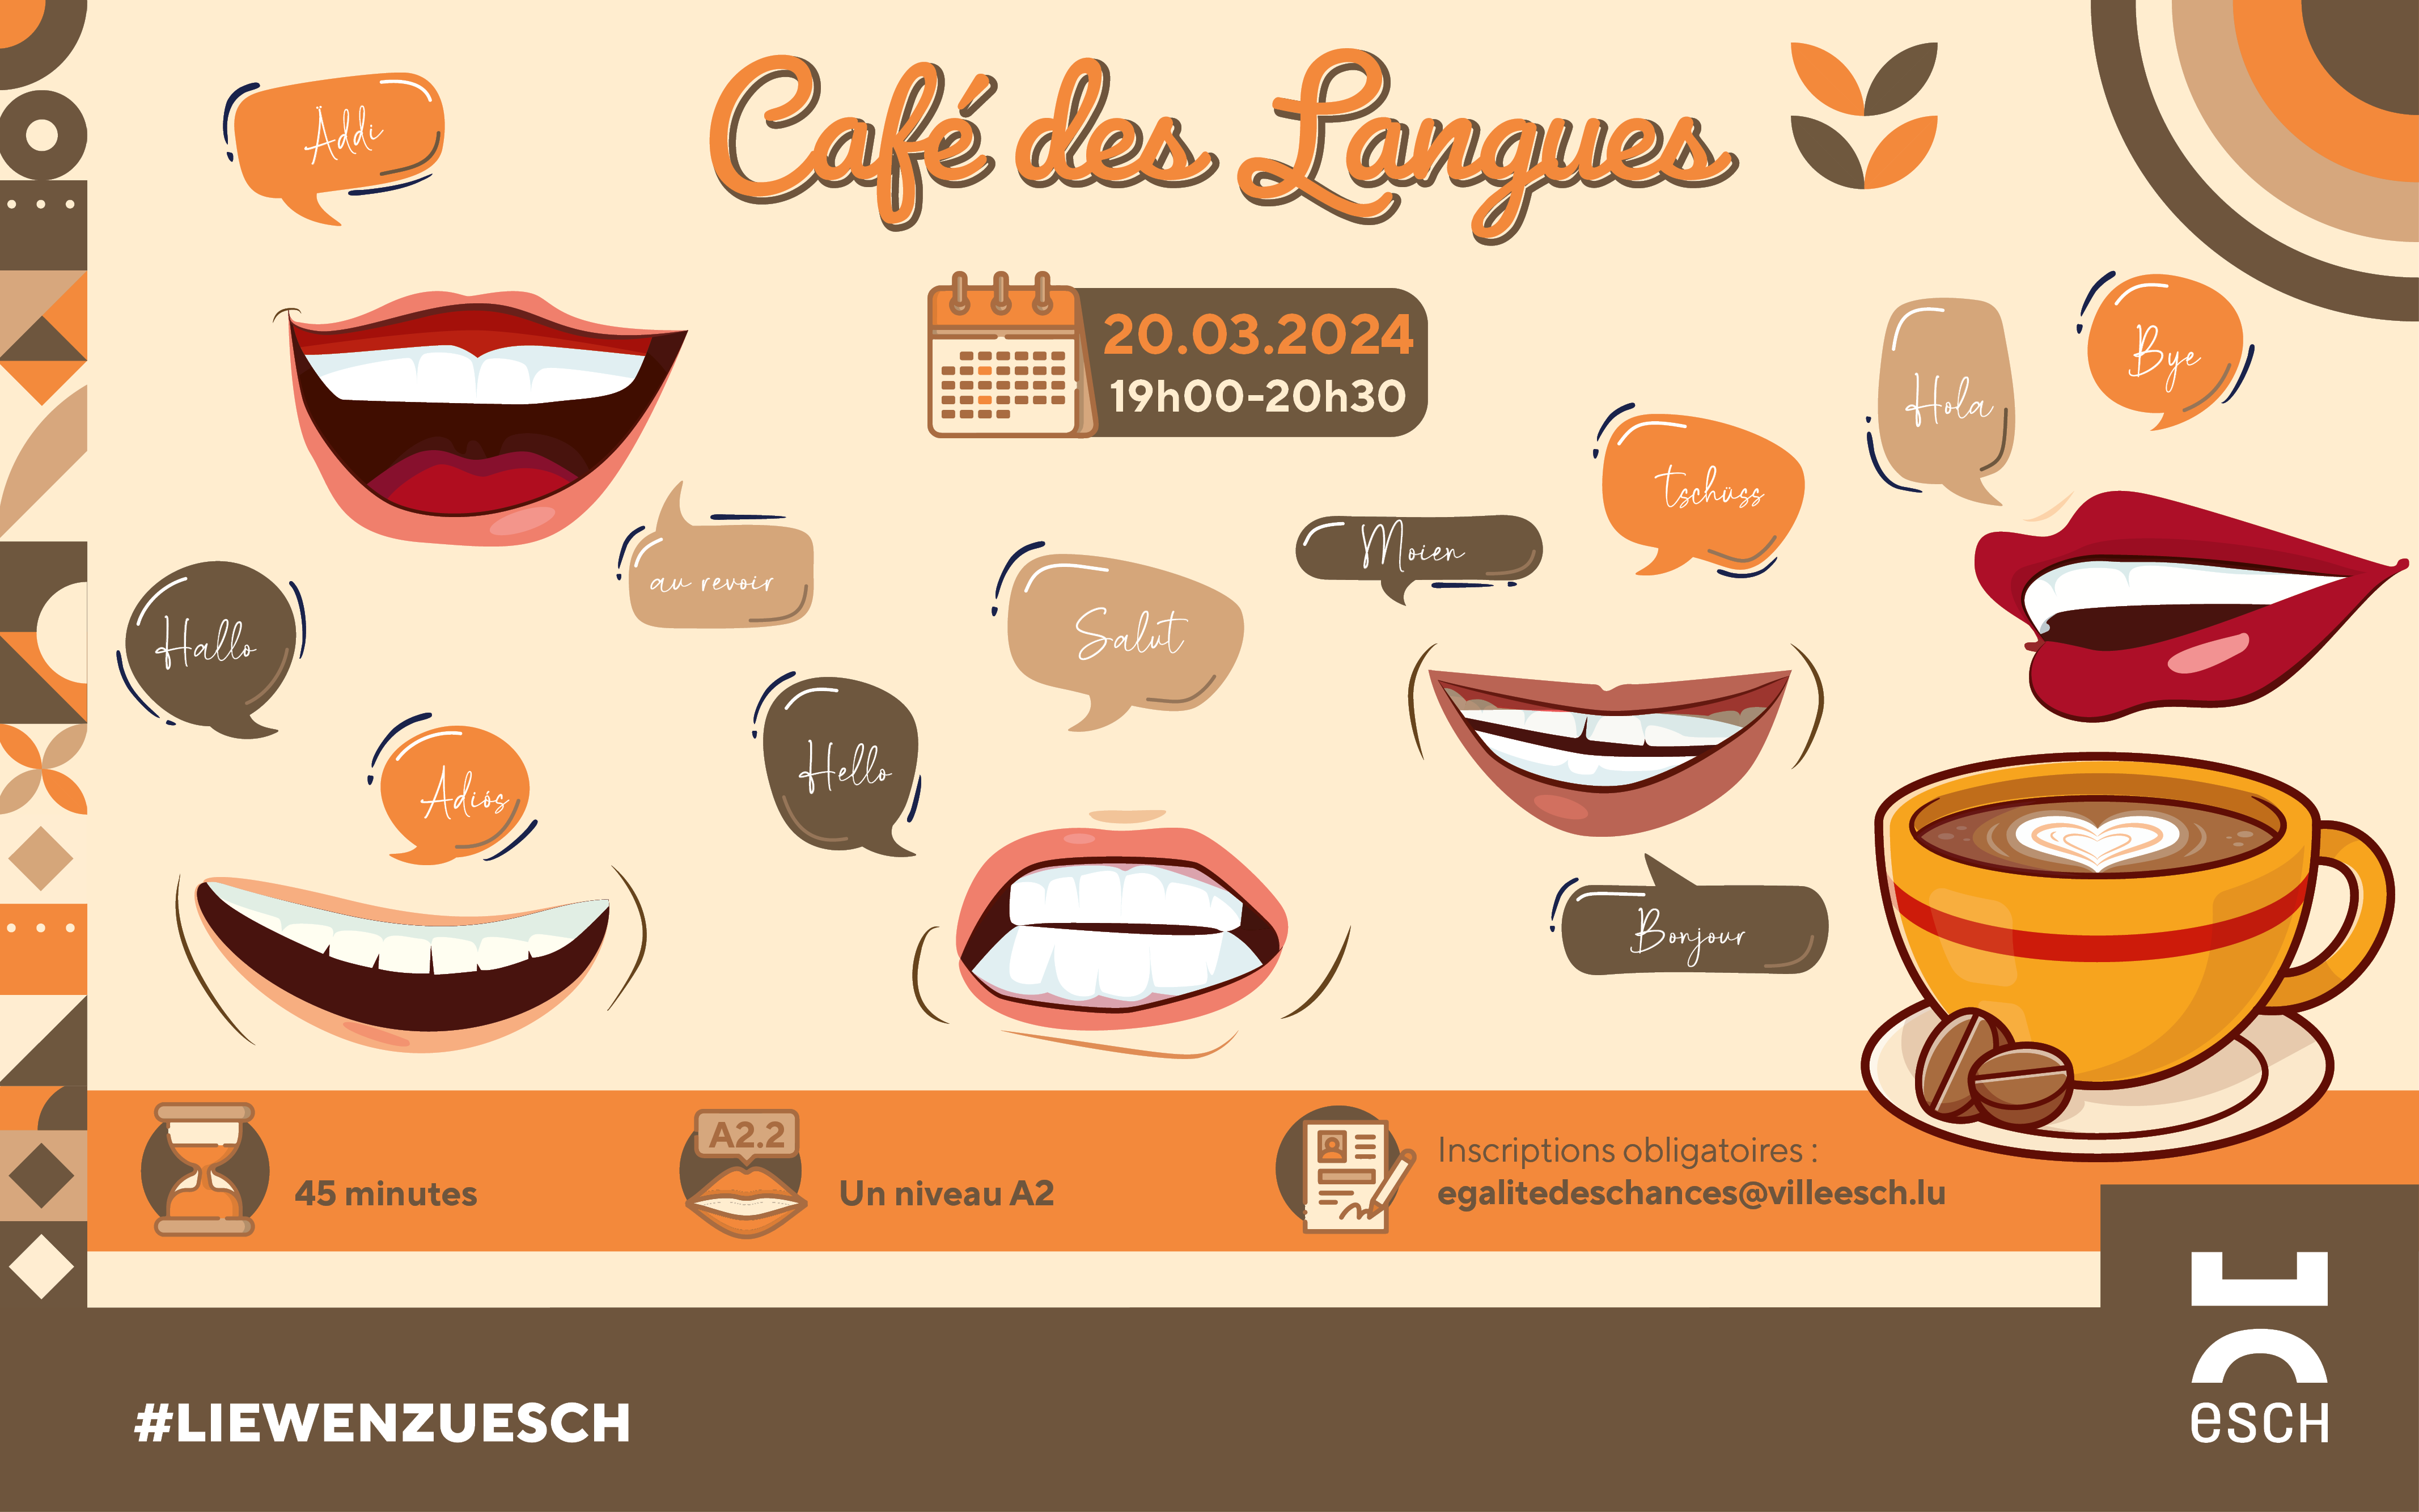 Language cafe